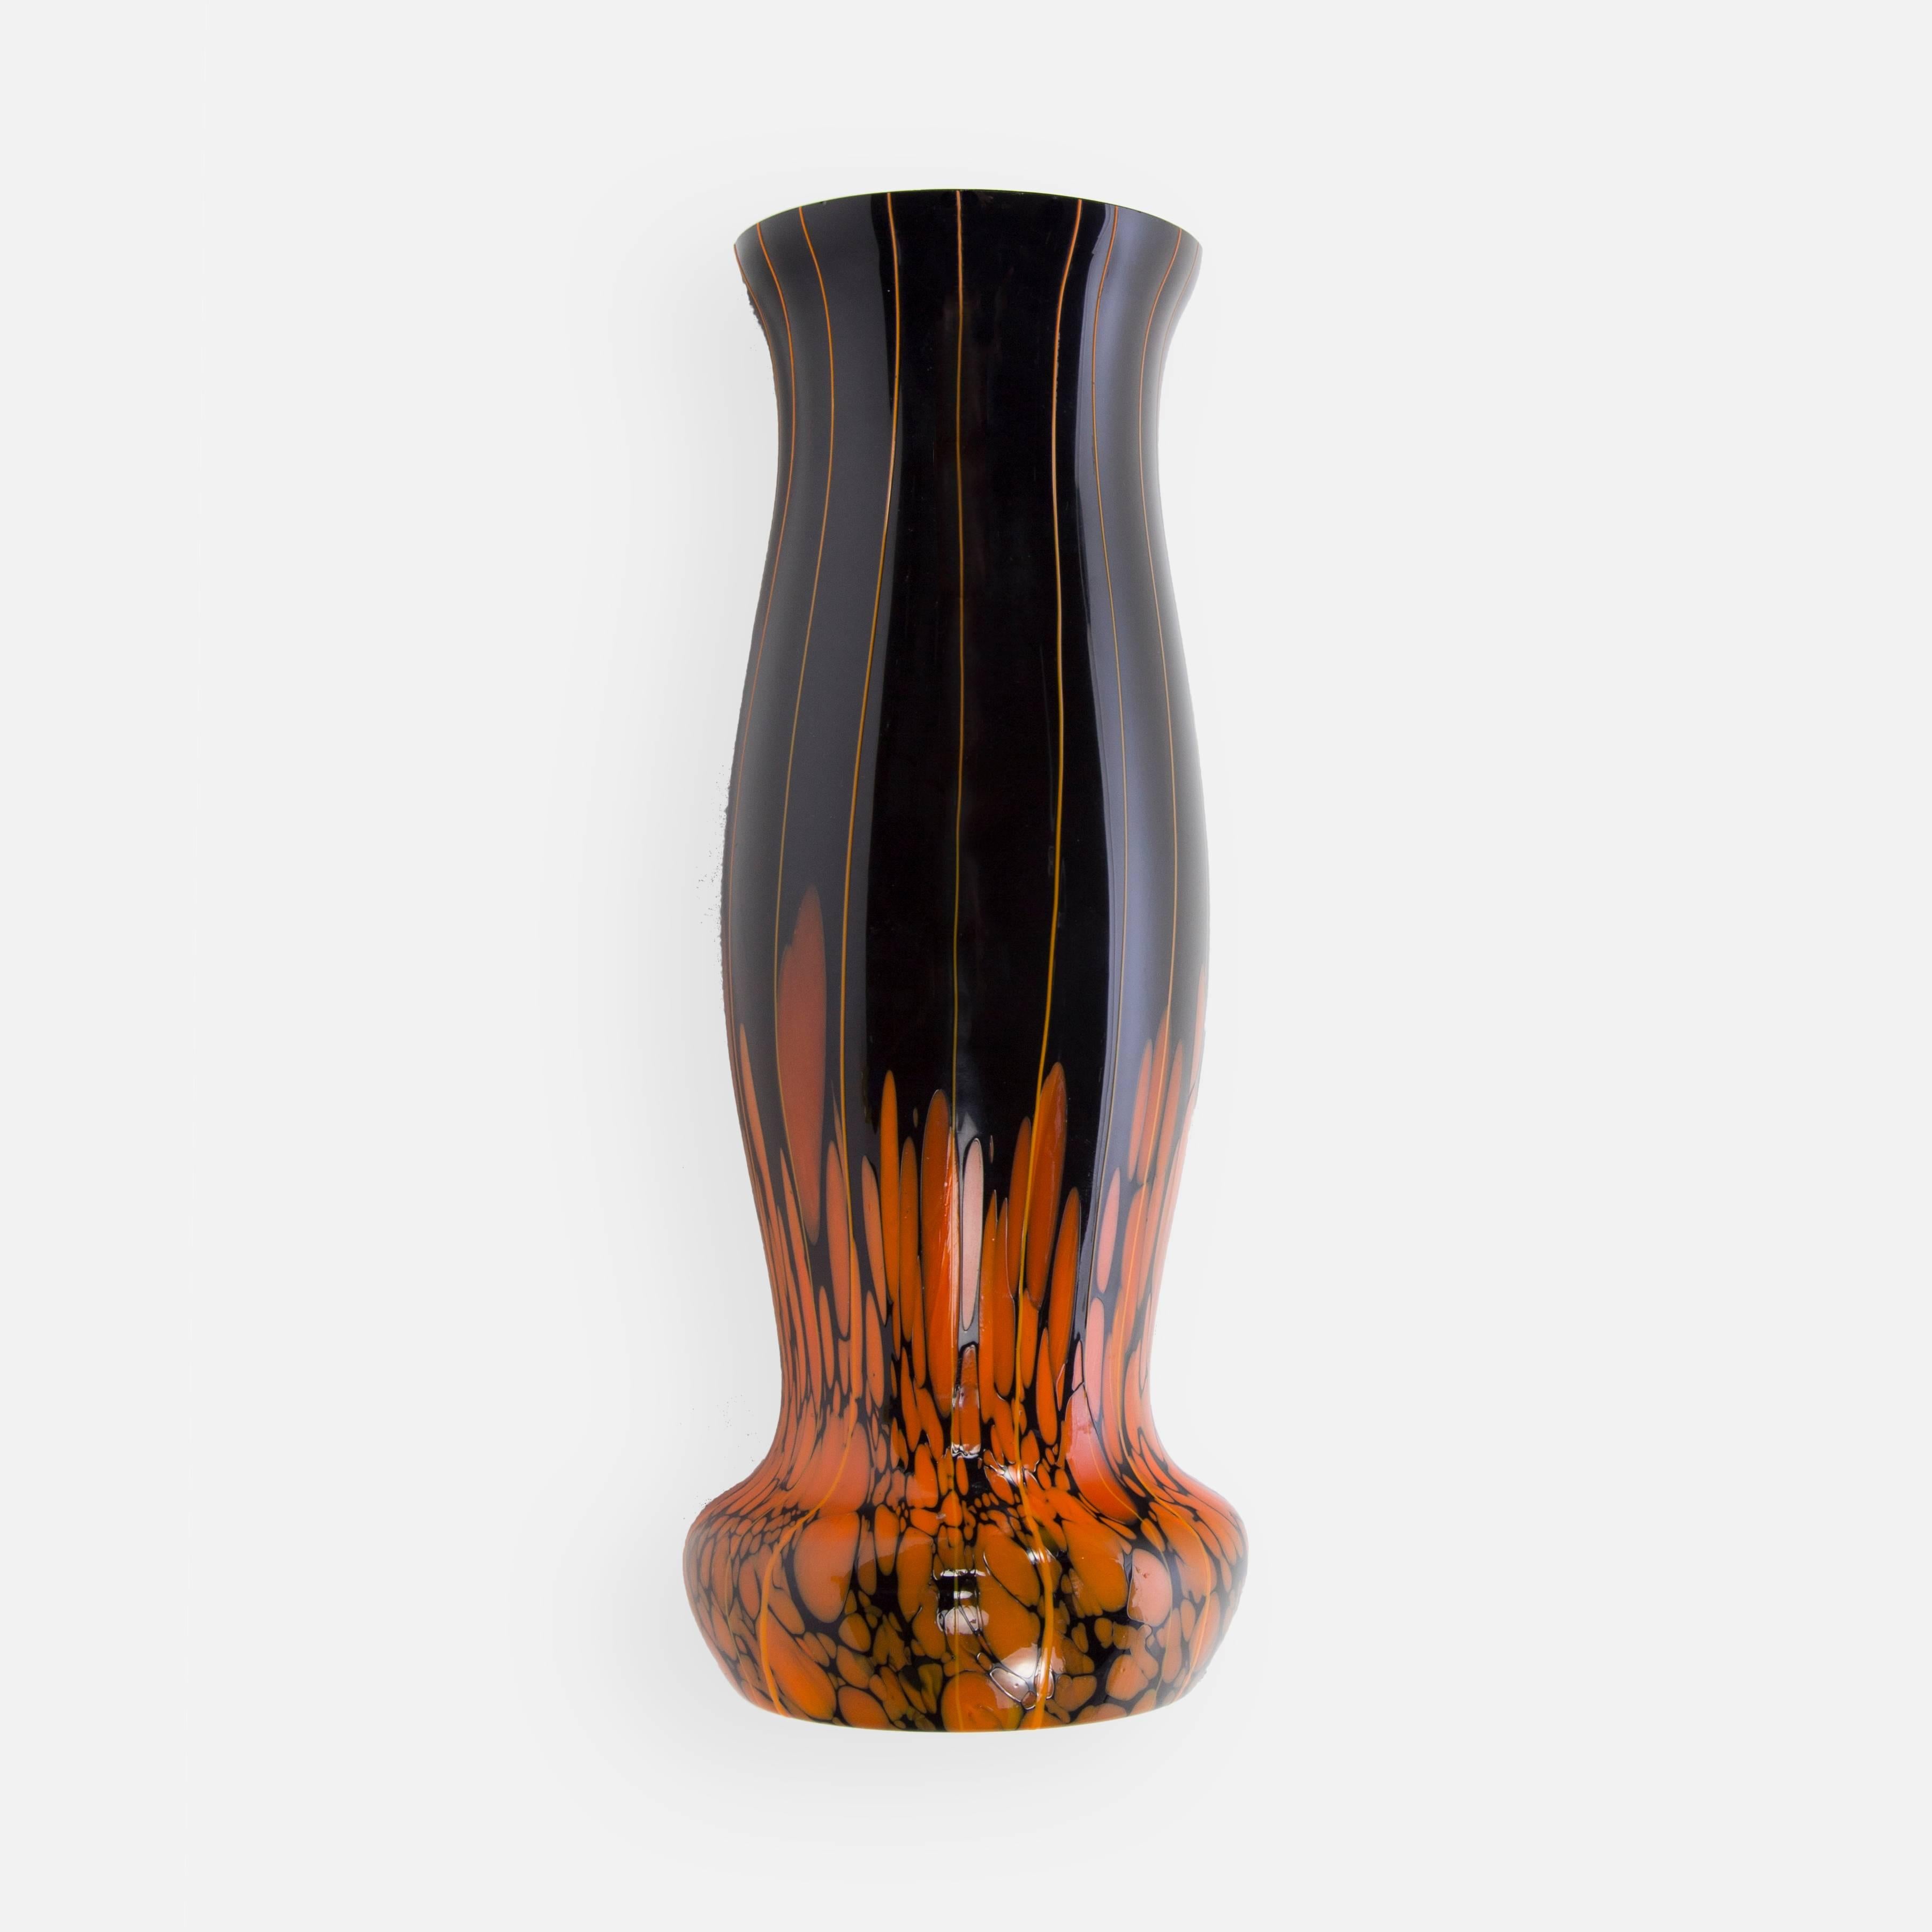 Grand vase rétro en verre d'art étonnant et magnifiquement fabriqué à la main, forme conique en verre noir et orange avec de magnifiques et rares motifs tourbillonnants orange ; studio d'art du milieu du siècle ; environ 30 cm de haut, vers les